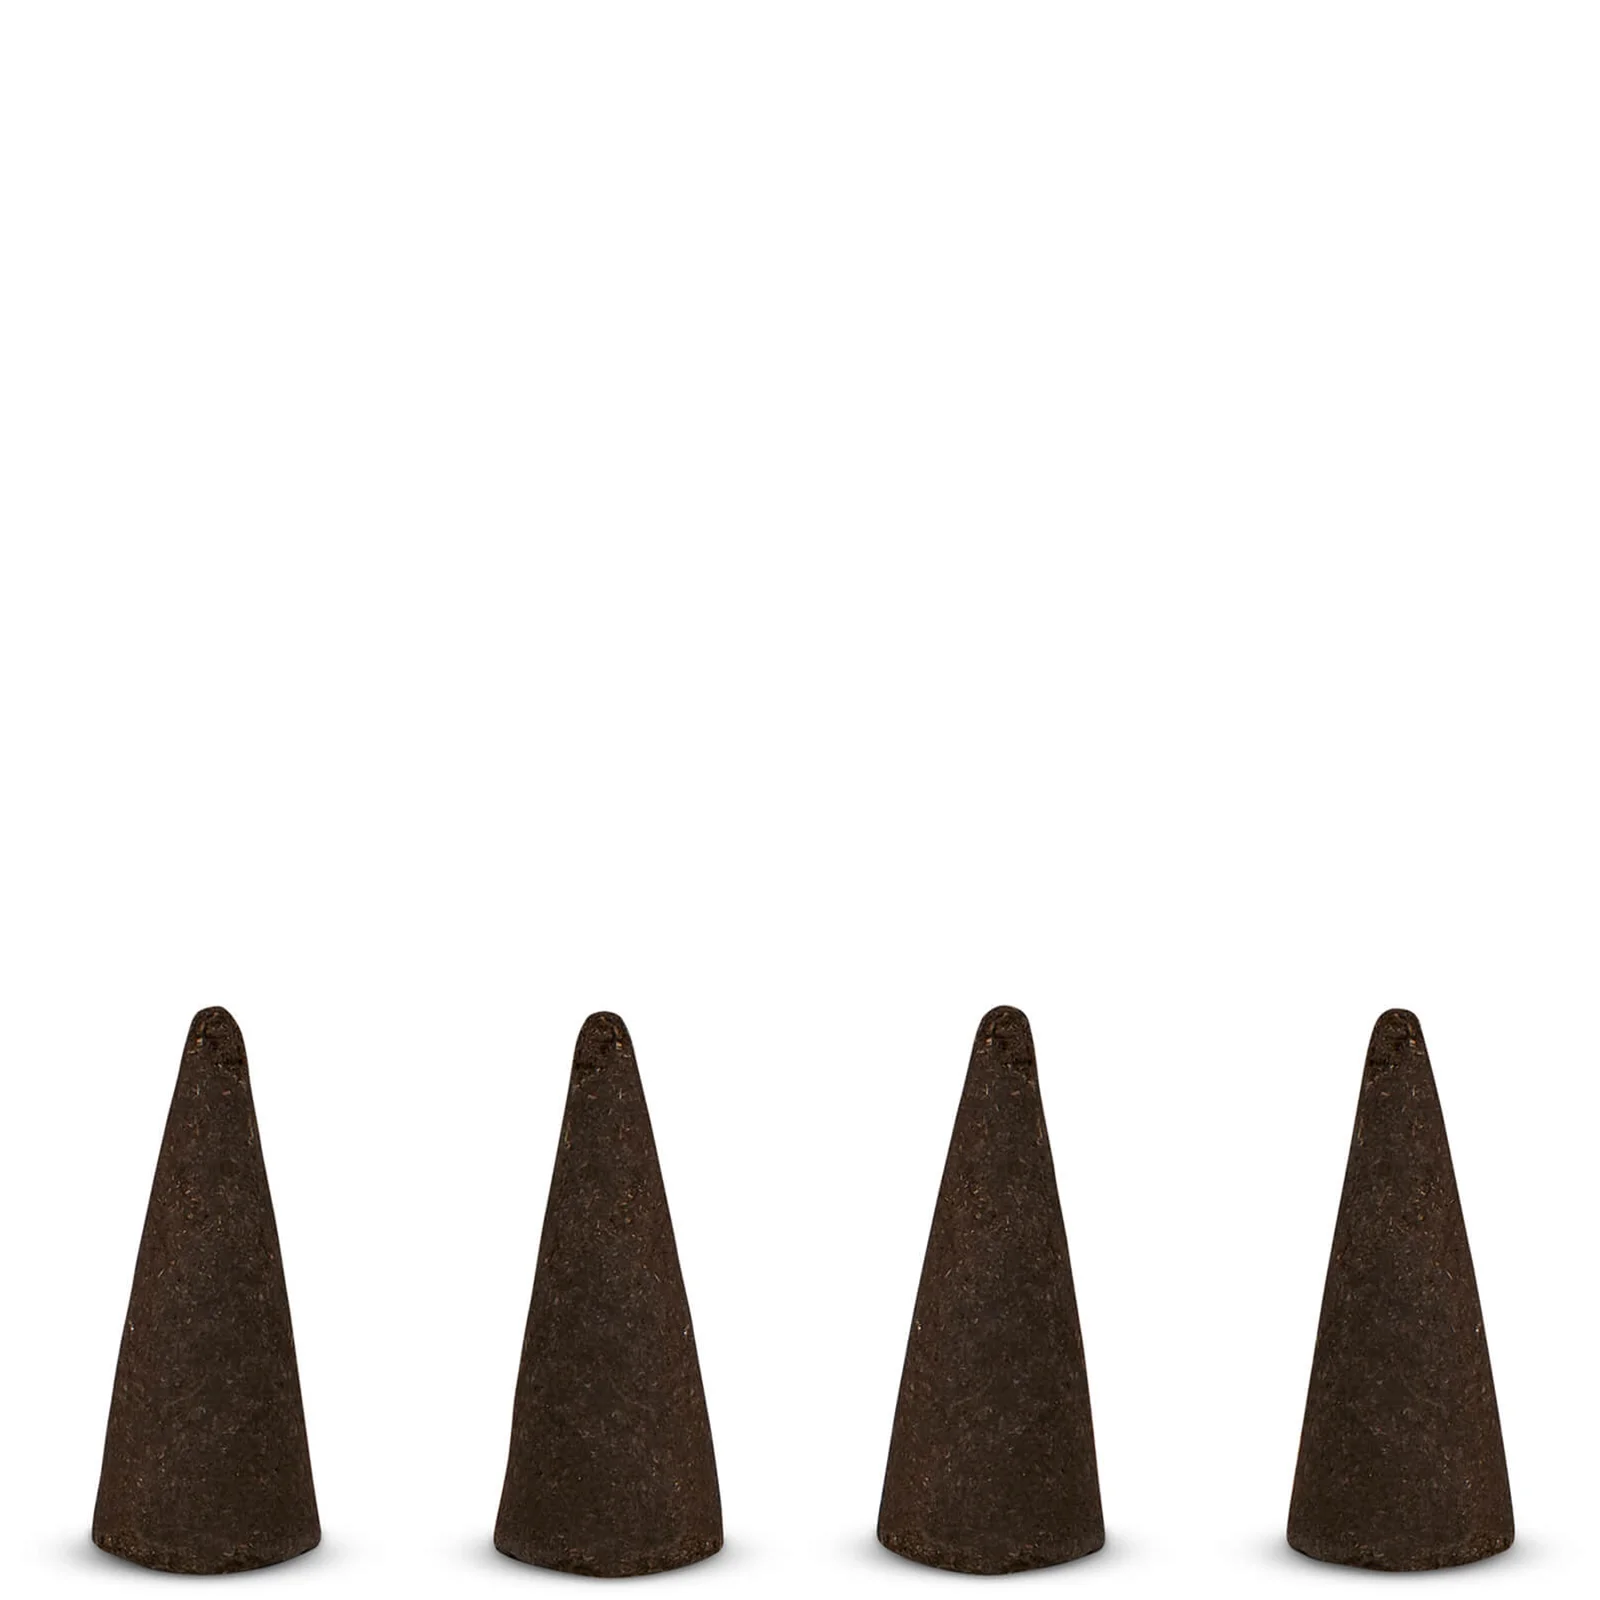 Tom Dixon Fog Incense Cones - Orientalist Image 1